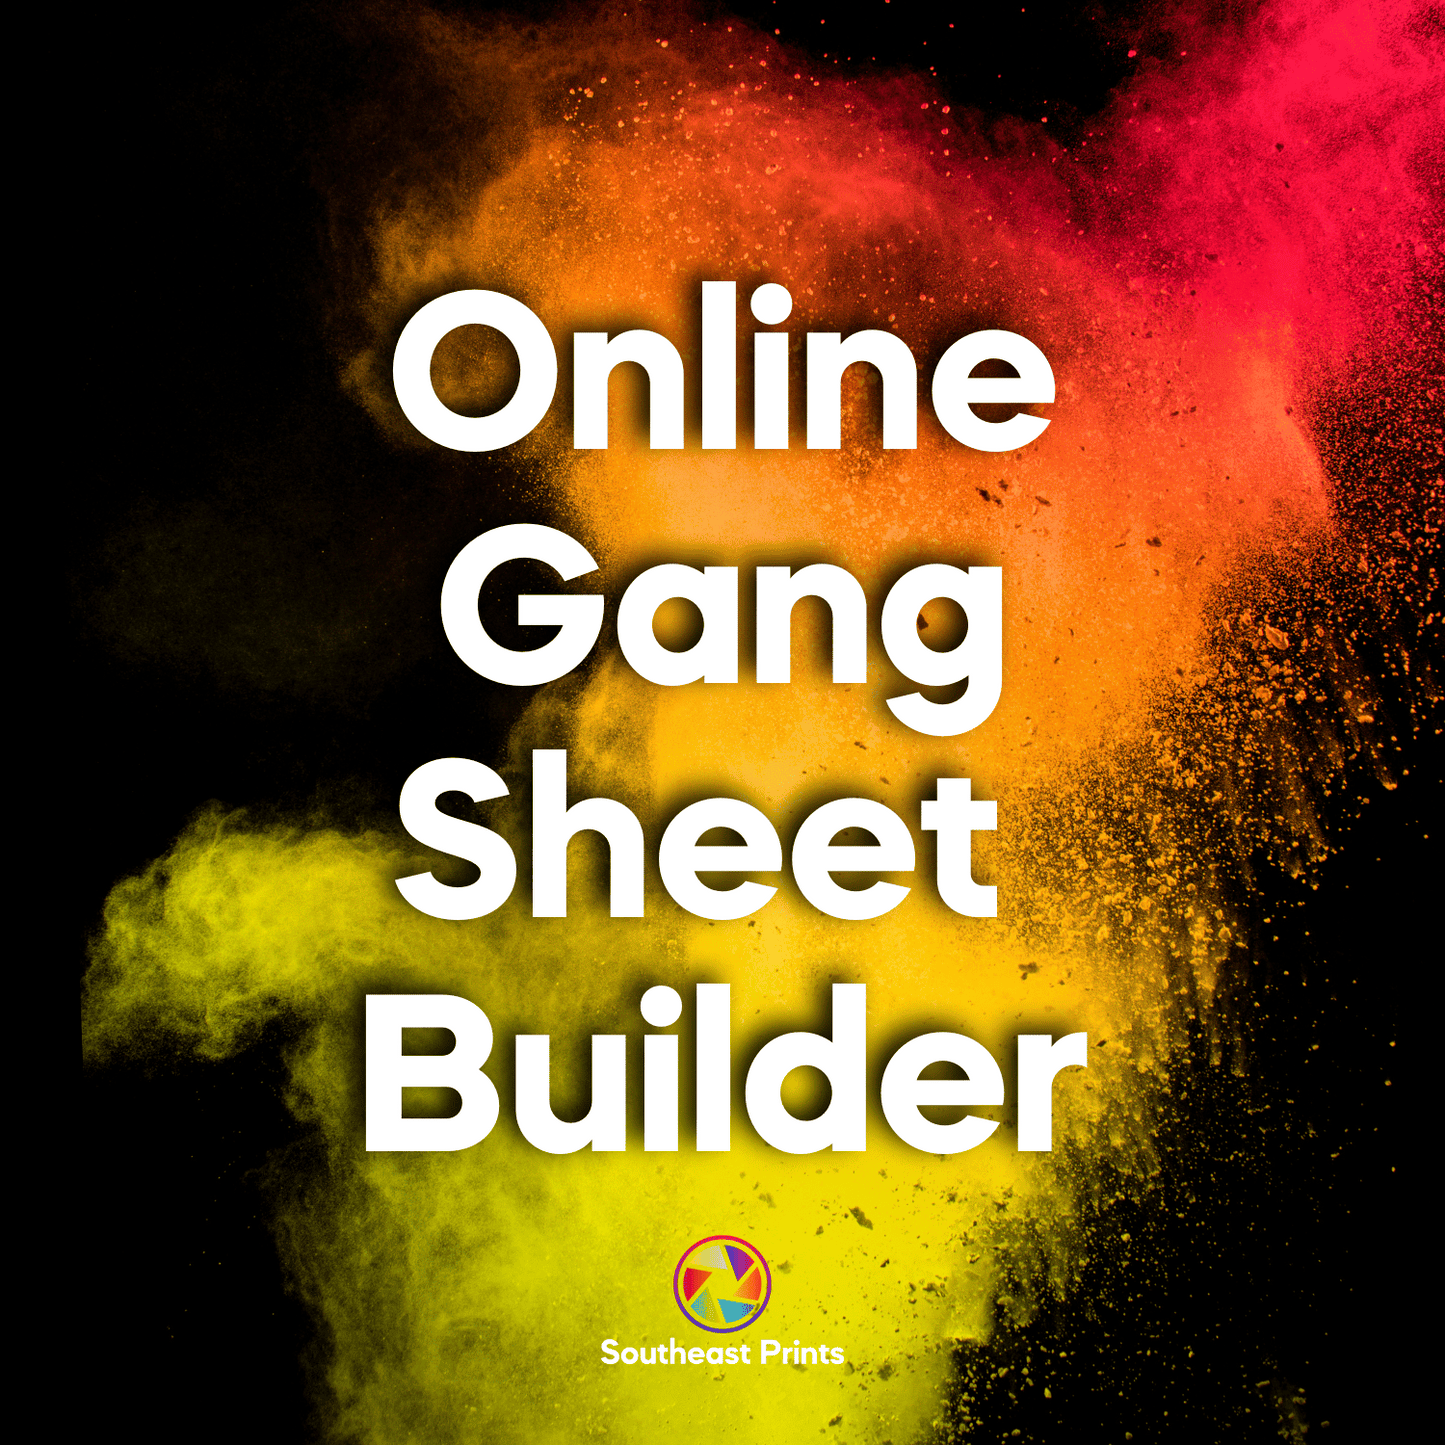 Online Gang Sheet Builder